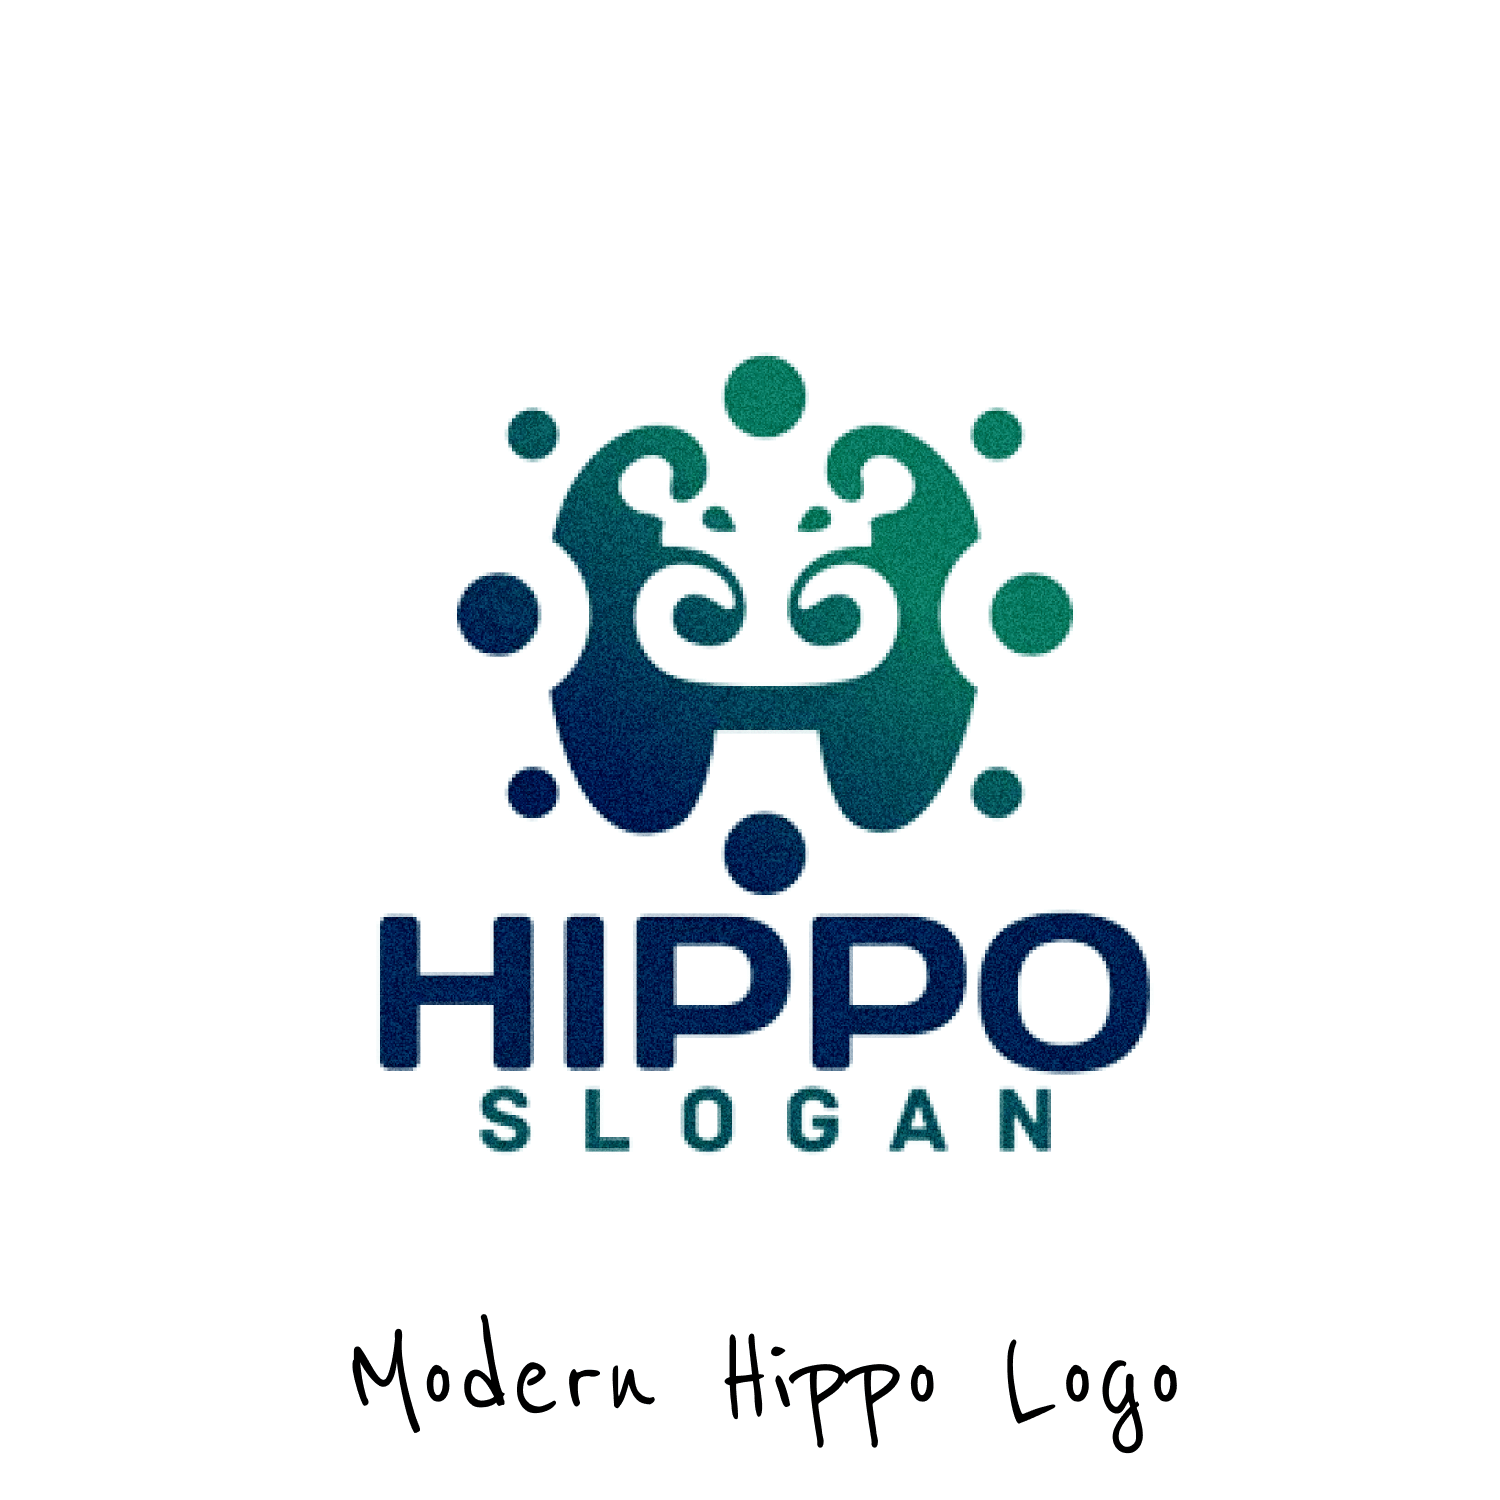 Hippo logo company name.